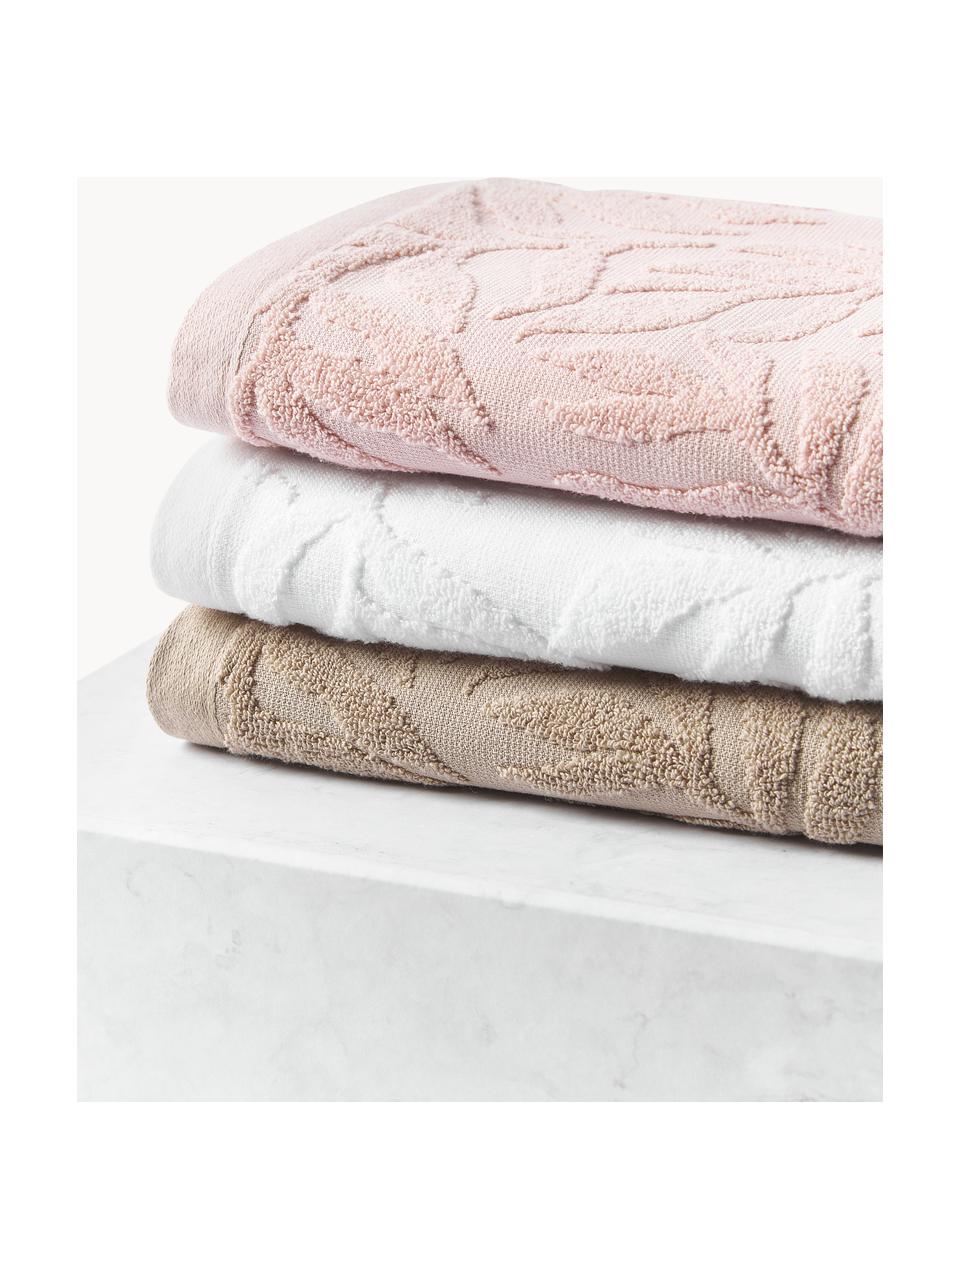 Set de toallas Leaf, tamaños diferentes, Blanco, Set de 3 (toalla tocador, toalla lavabo y toalla de ducha)